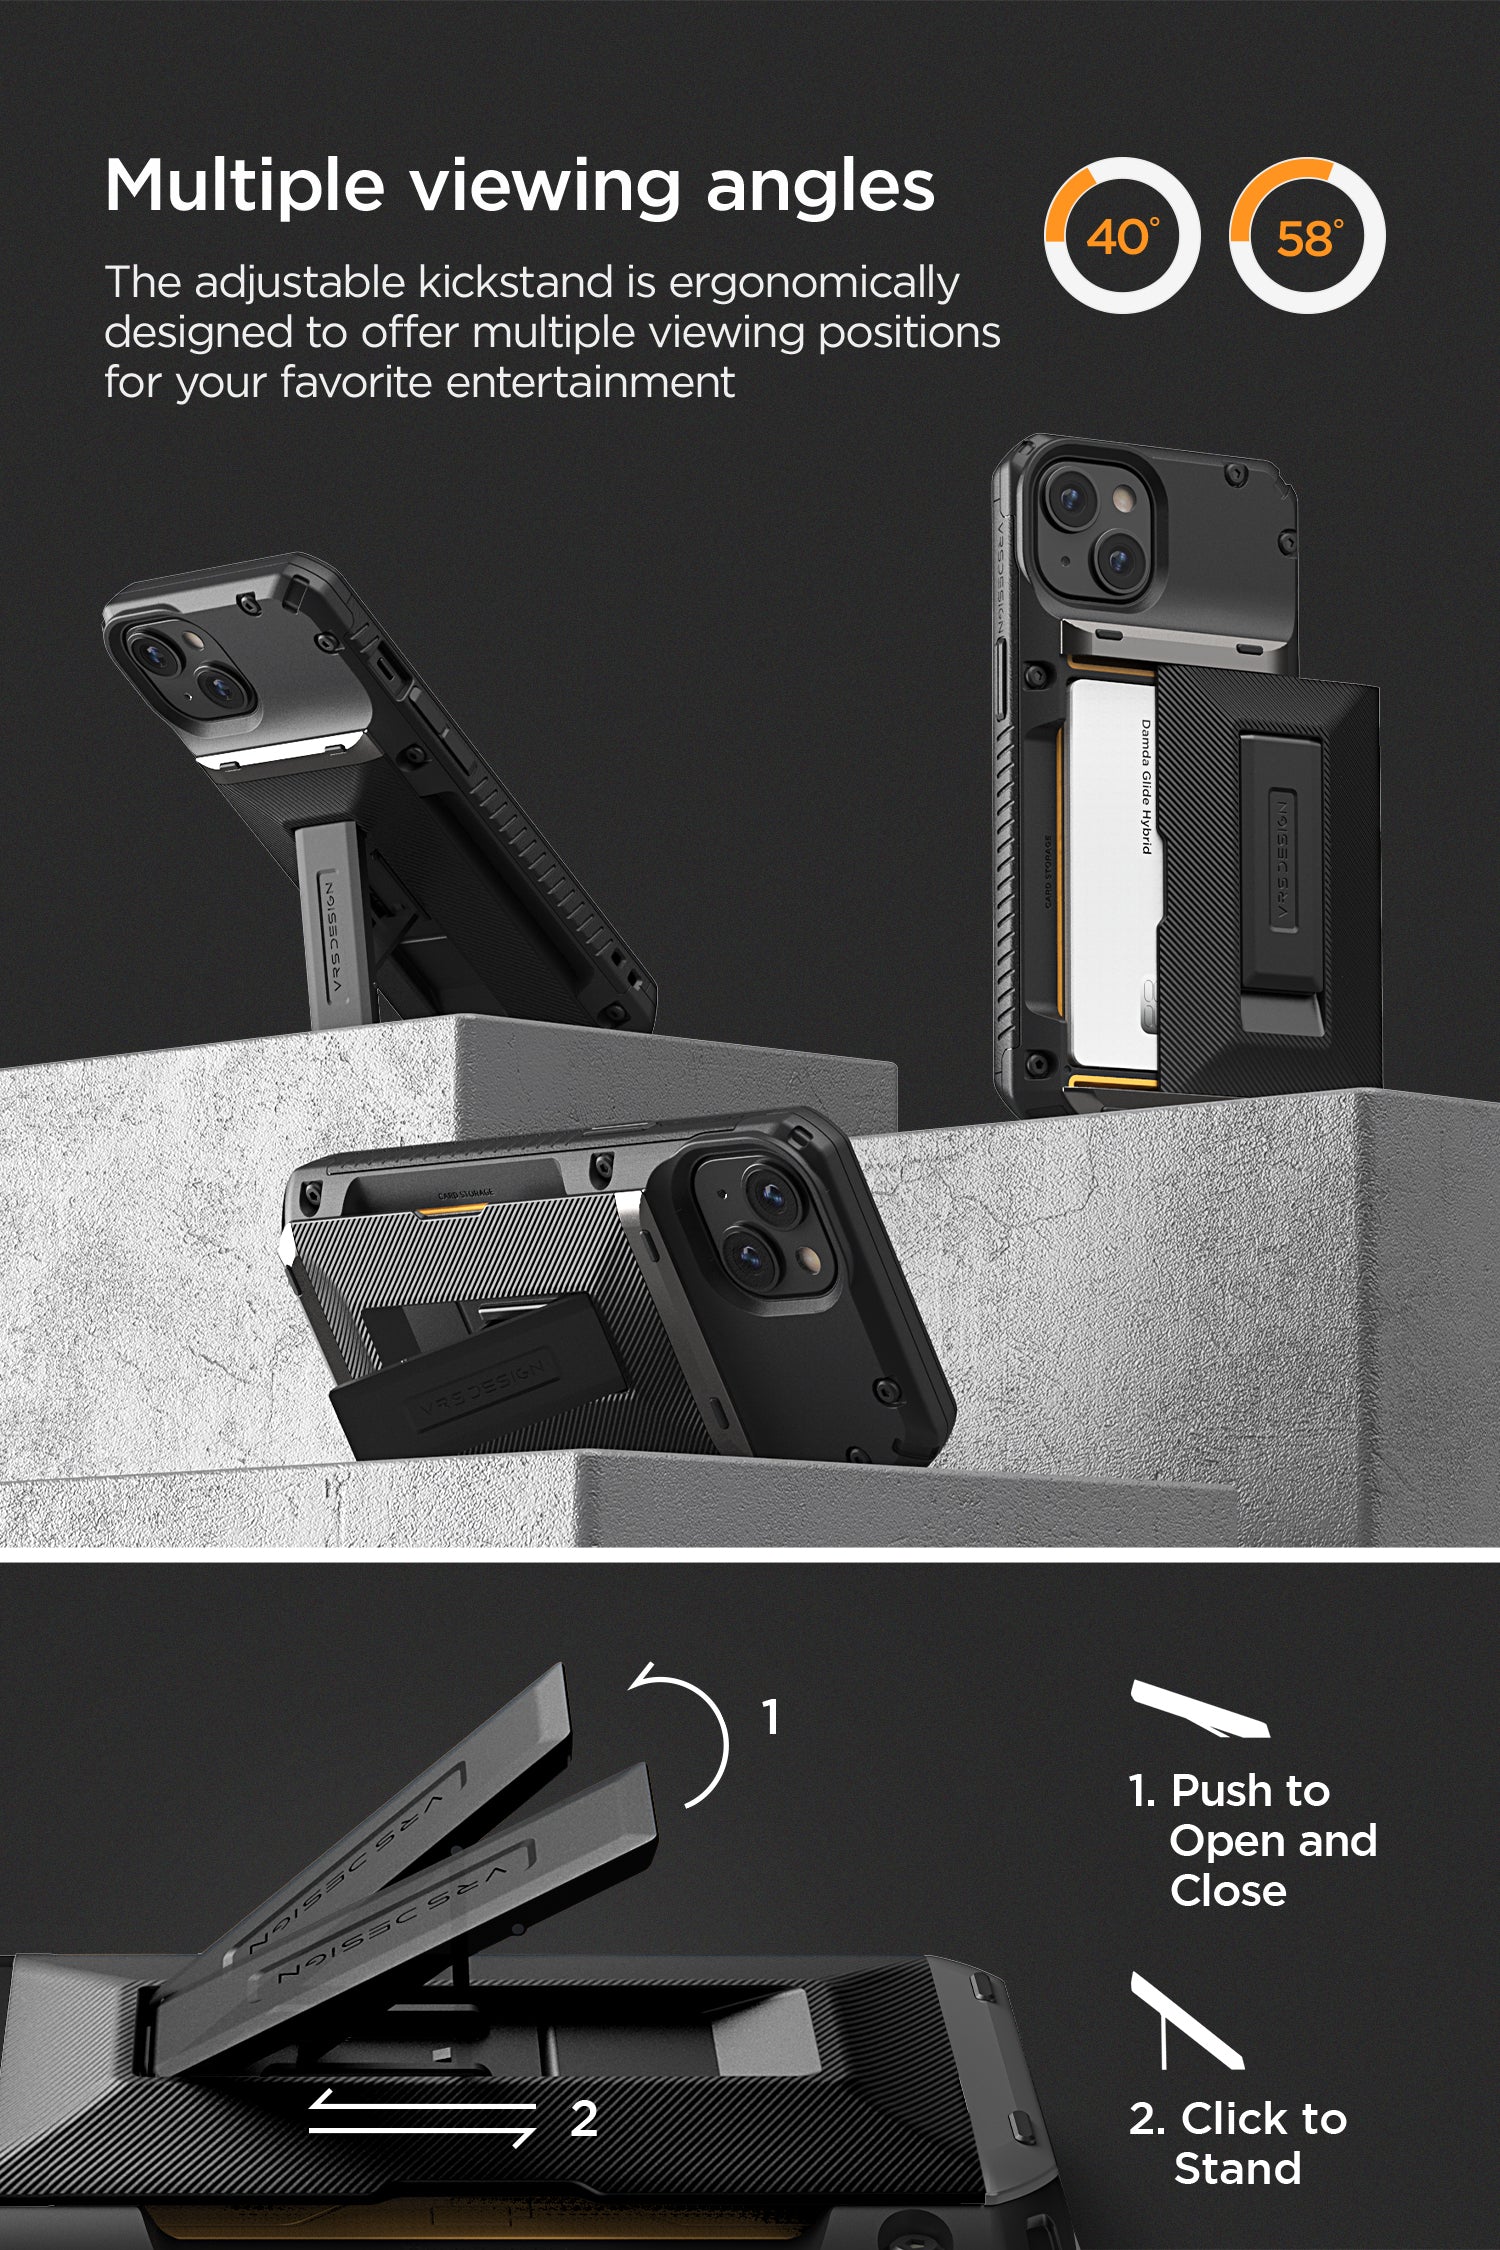 Rugged modern Apple iPhone 13 Pro Max MagSafe case by VRS DESIGN – VRS  Design